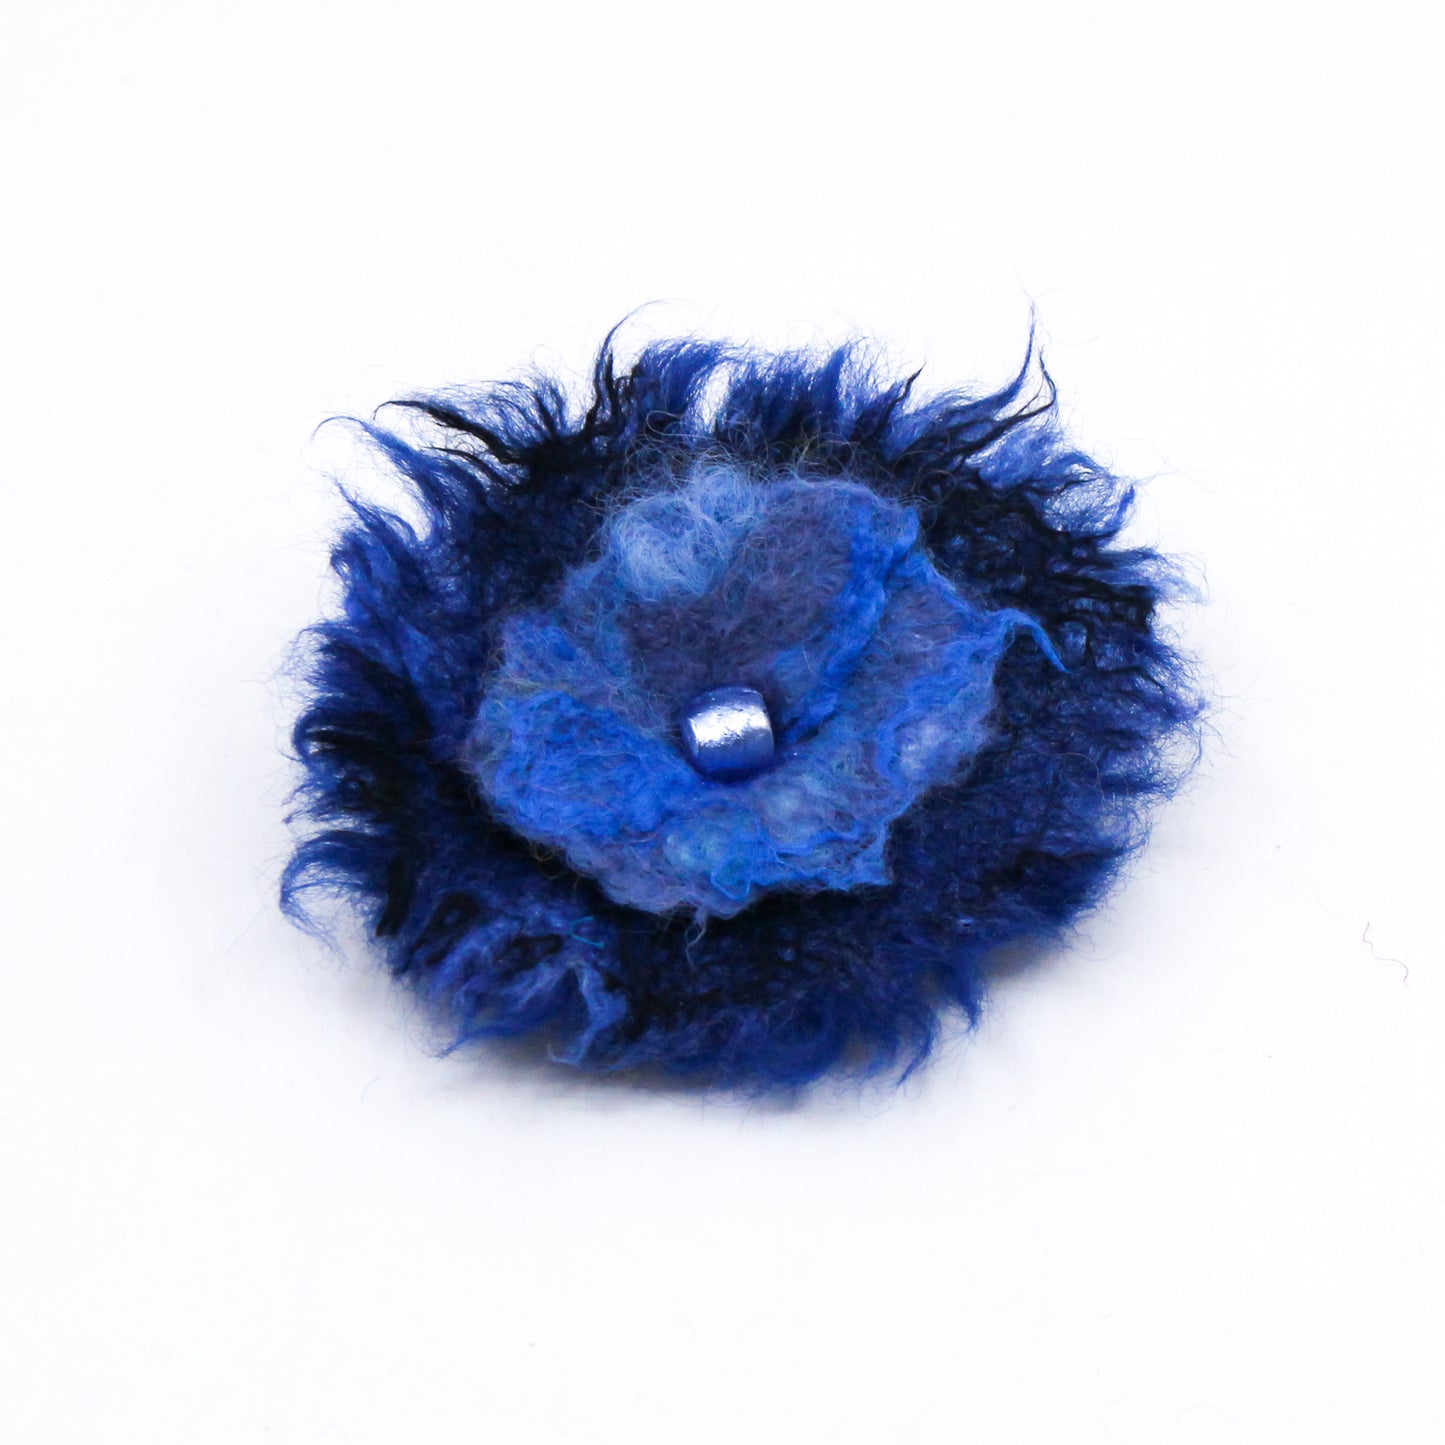 Dark blue flower pin